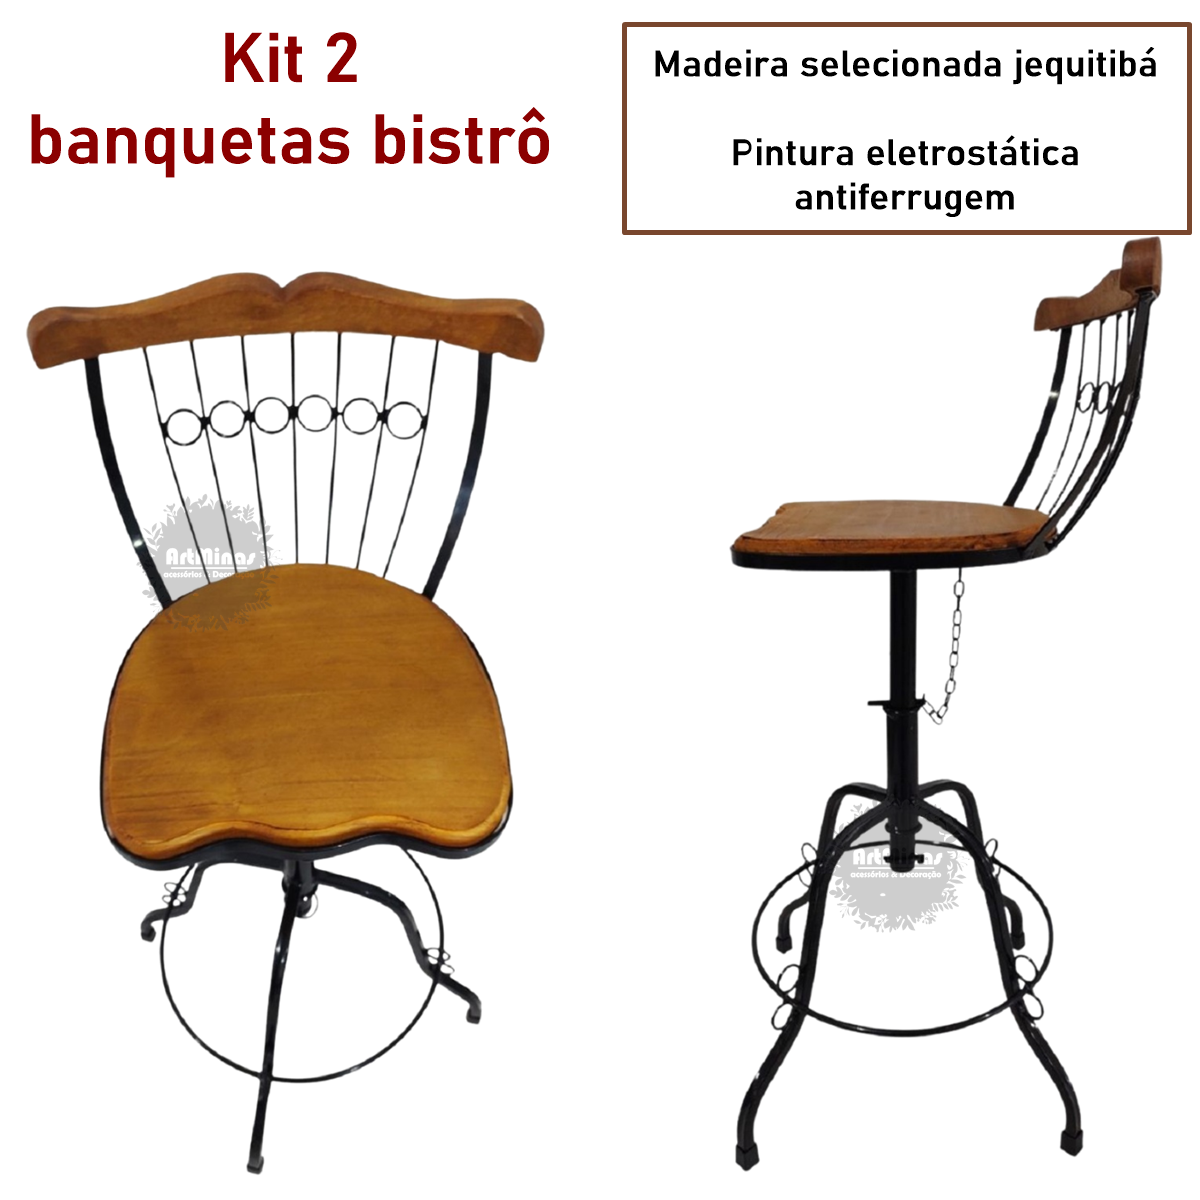 kit 2 banquetas giratória e regulável artesanal ferro madeira - 3